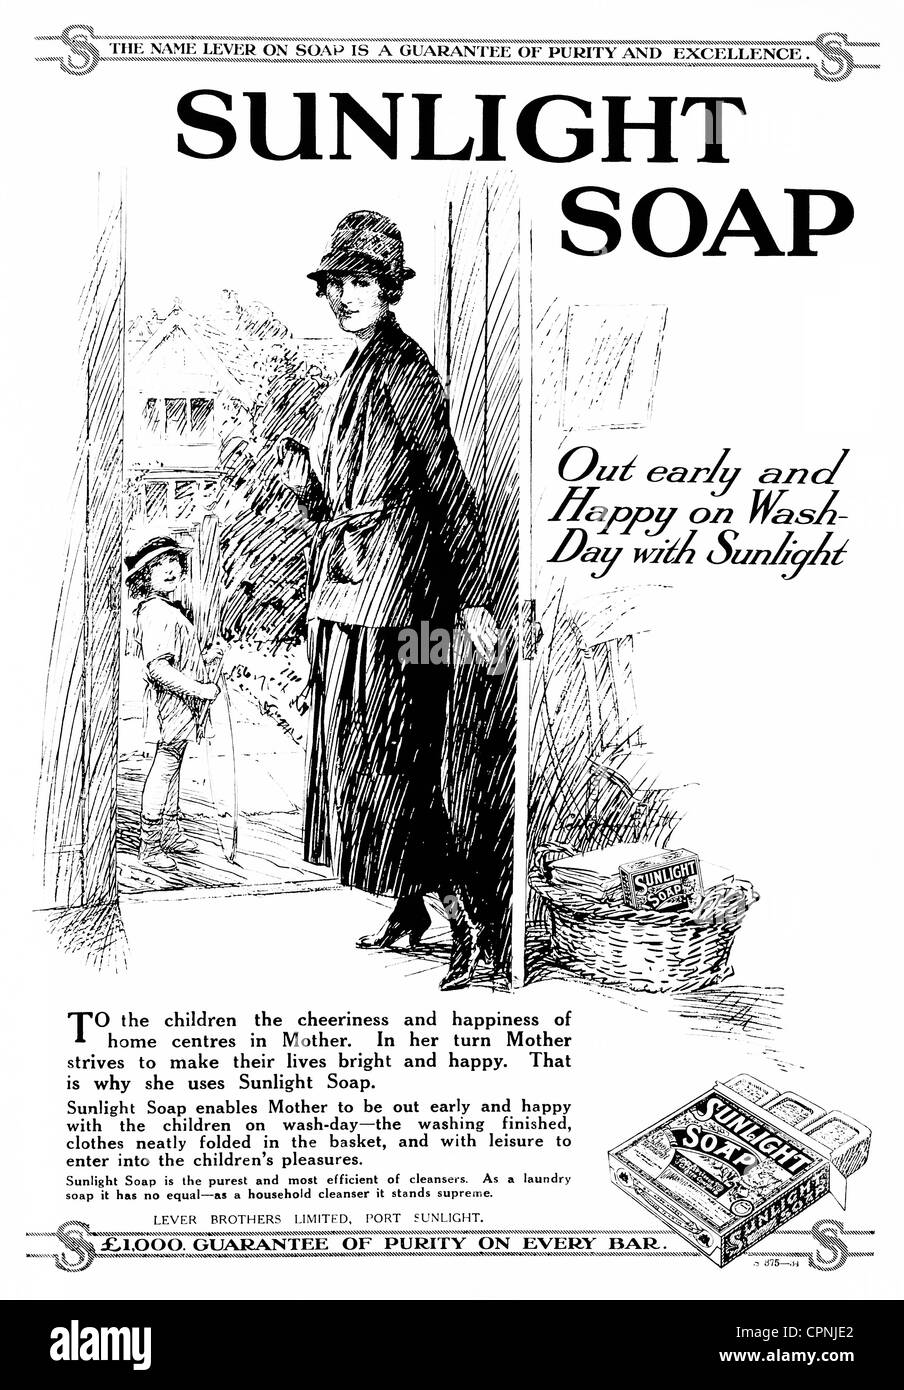 1920s 'Homes & Gardens' magazine advertisement for 'Sunlight Soap' - UK. Stock Photo